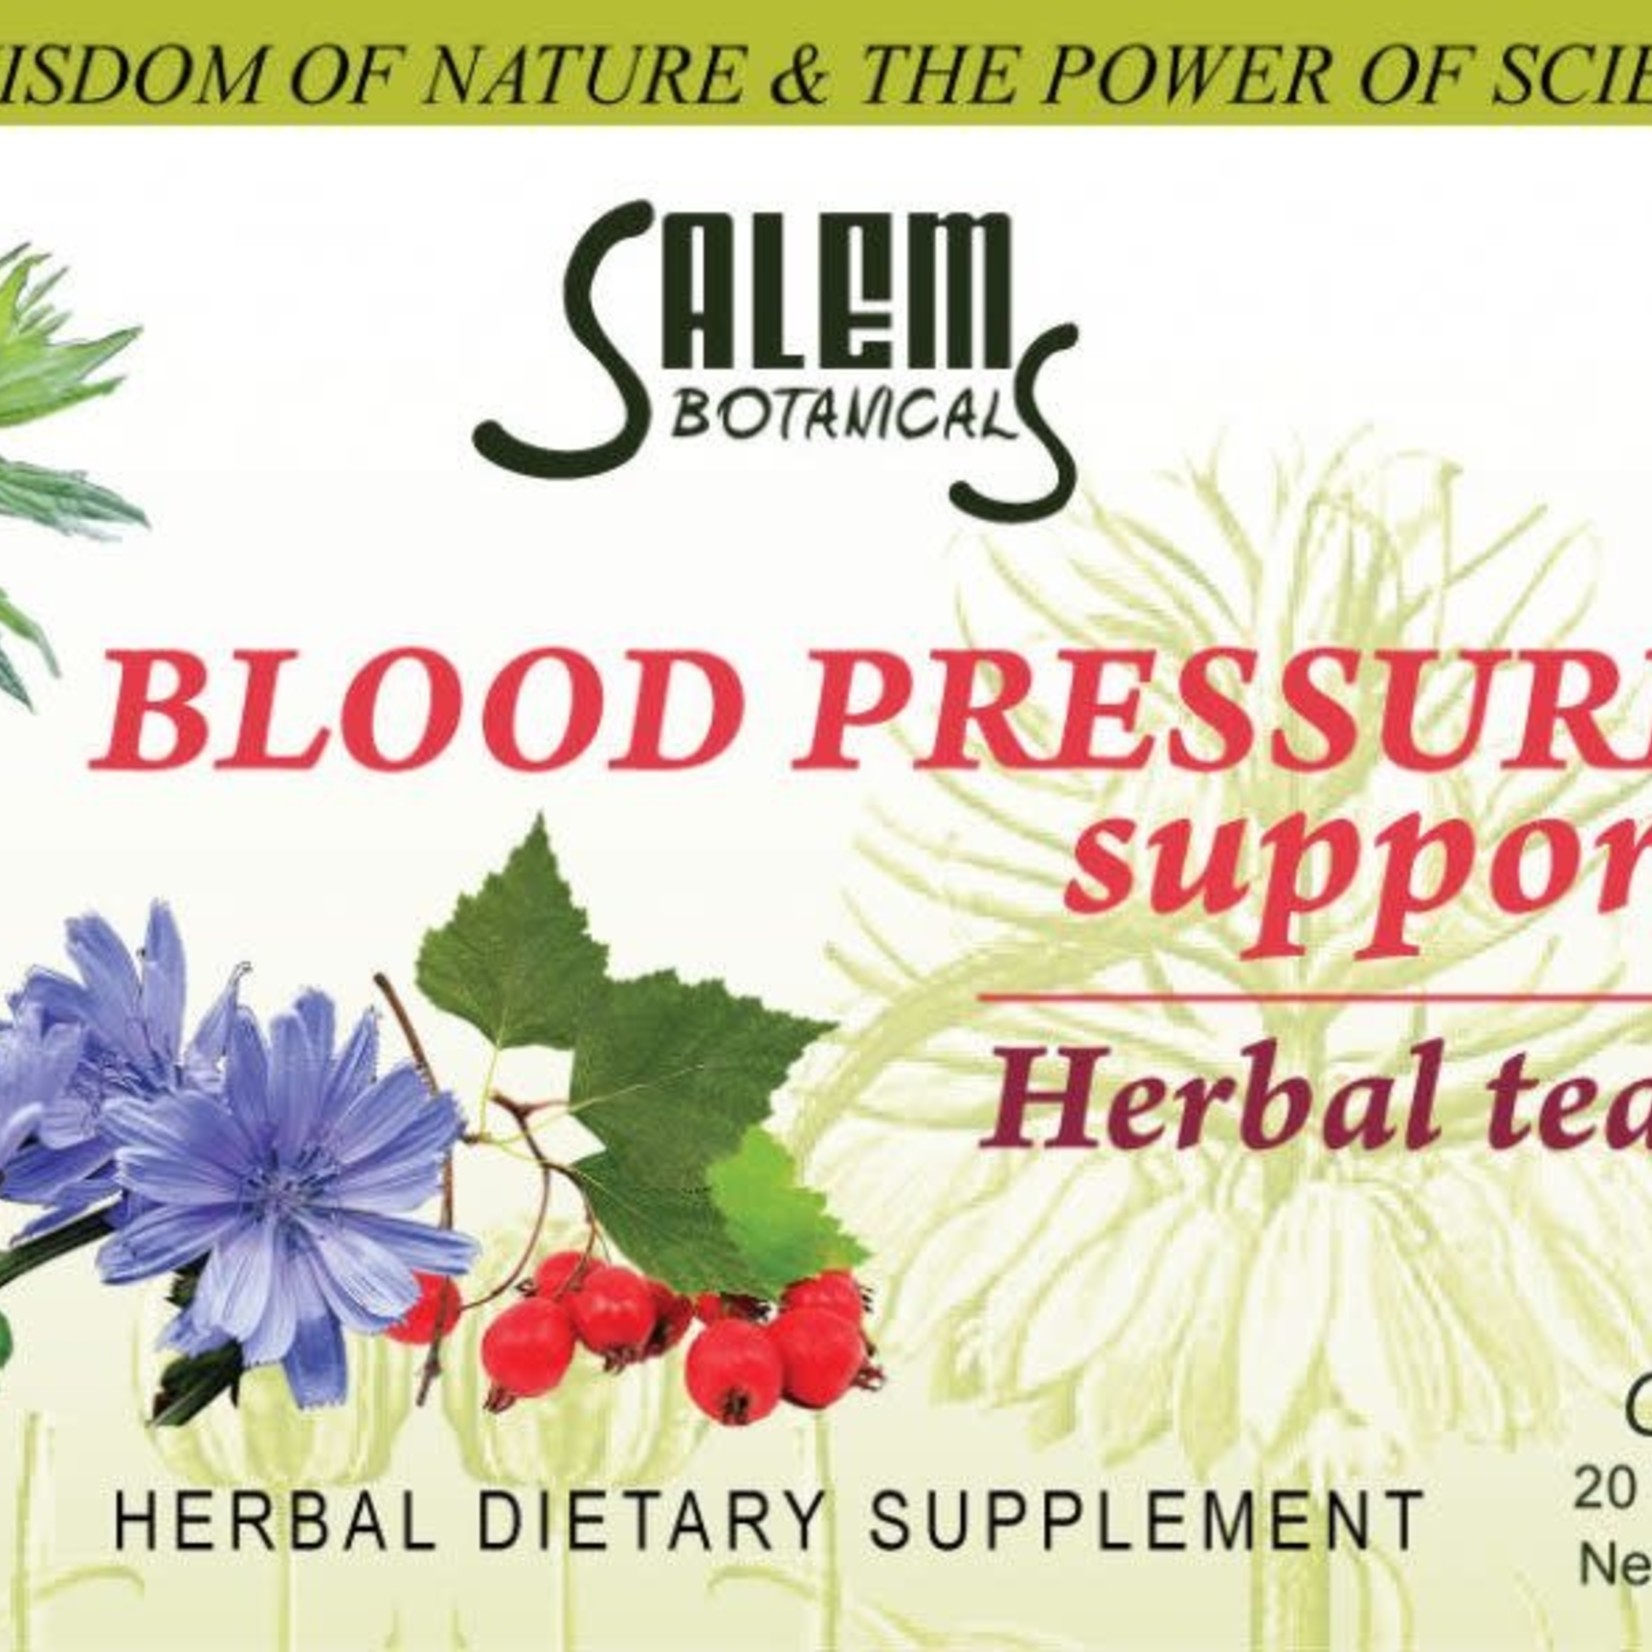 Salem Botanical Травяной чай, поддержка кровяного давления